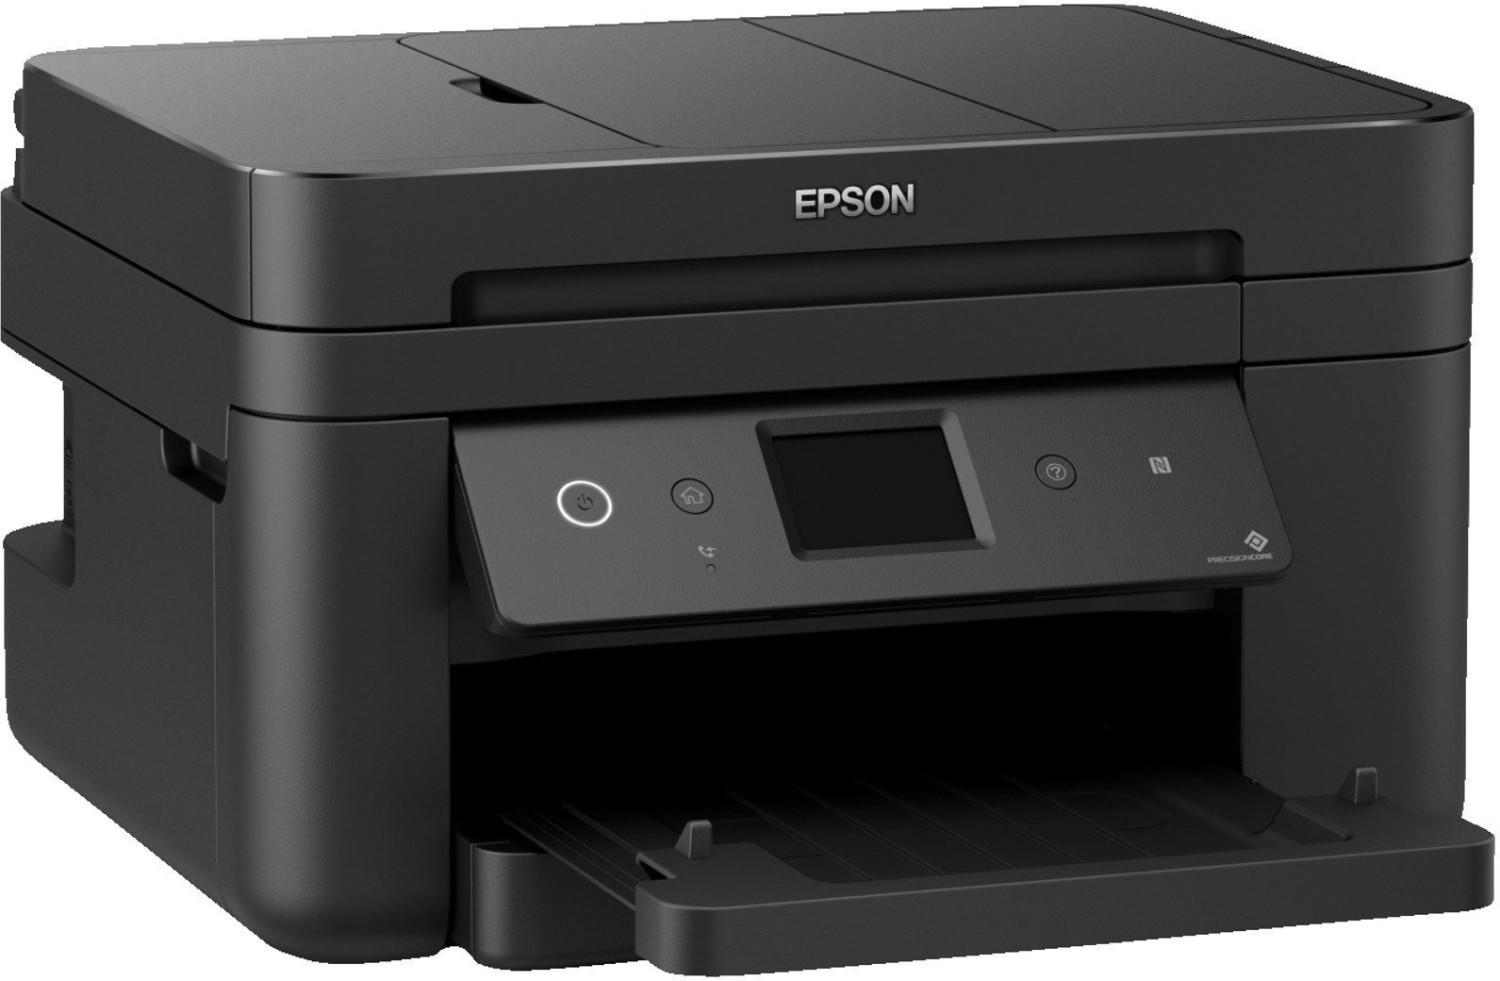 Epson WorkForce WF 2860